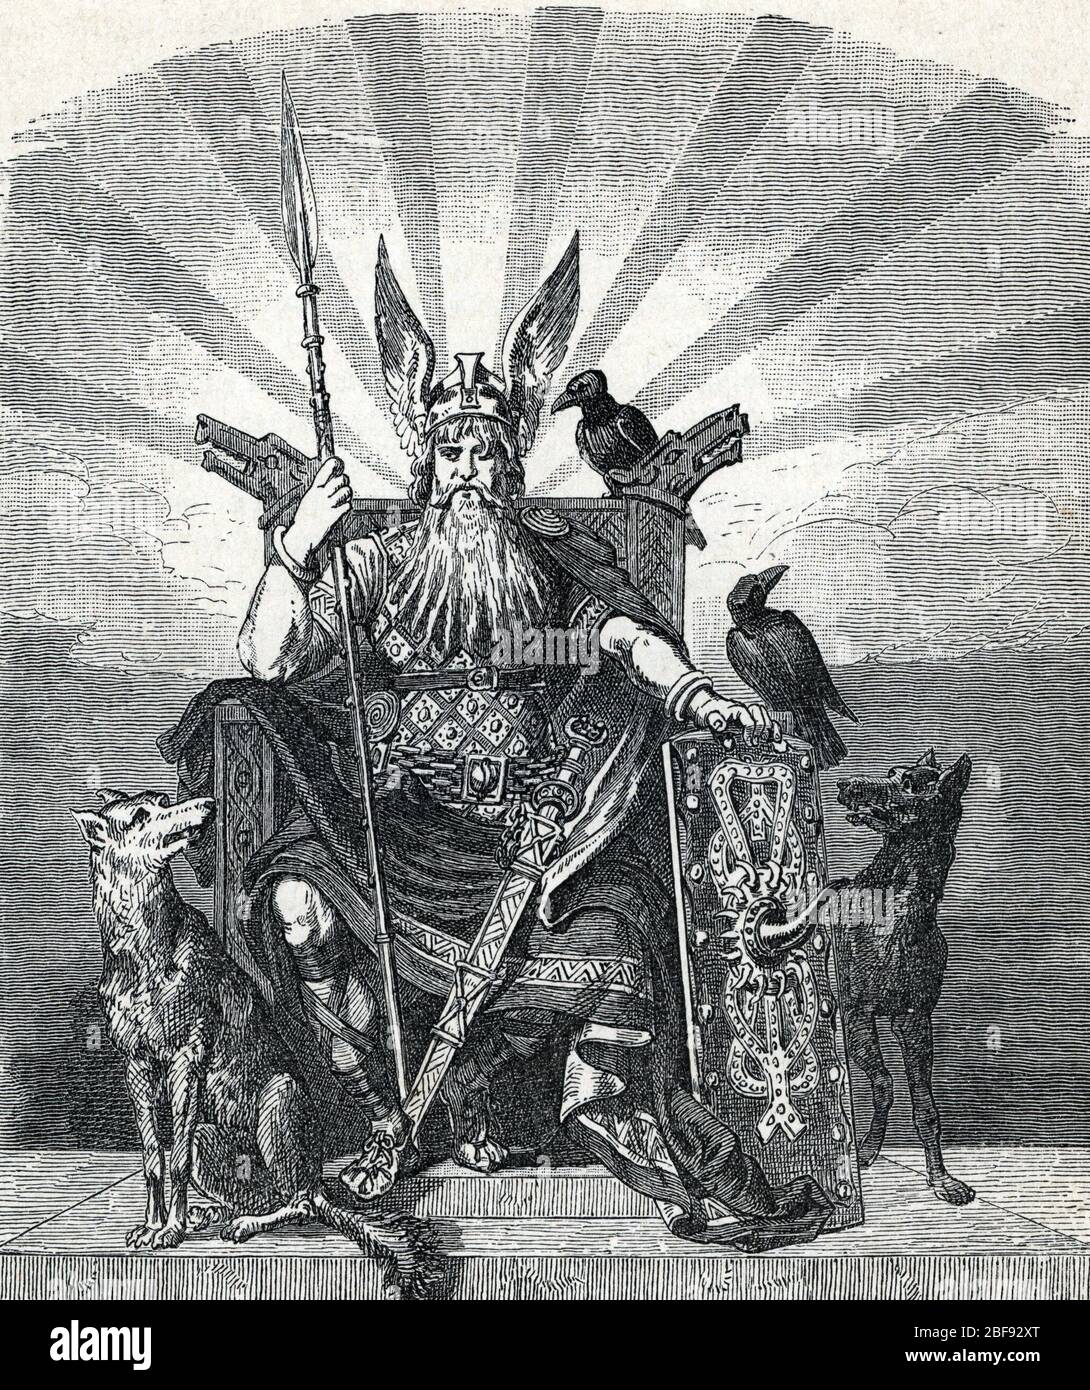 Mythologie nordique : Odin (nordische Mythologie : Odin) Gravure tiree de 'Nordisch-deutsche Gotter und Helden' de Wilhelm wagner 1901 Collection privee Stockfoto